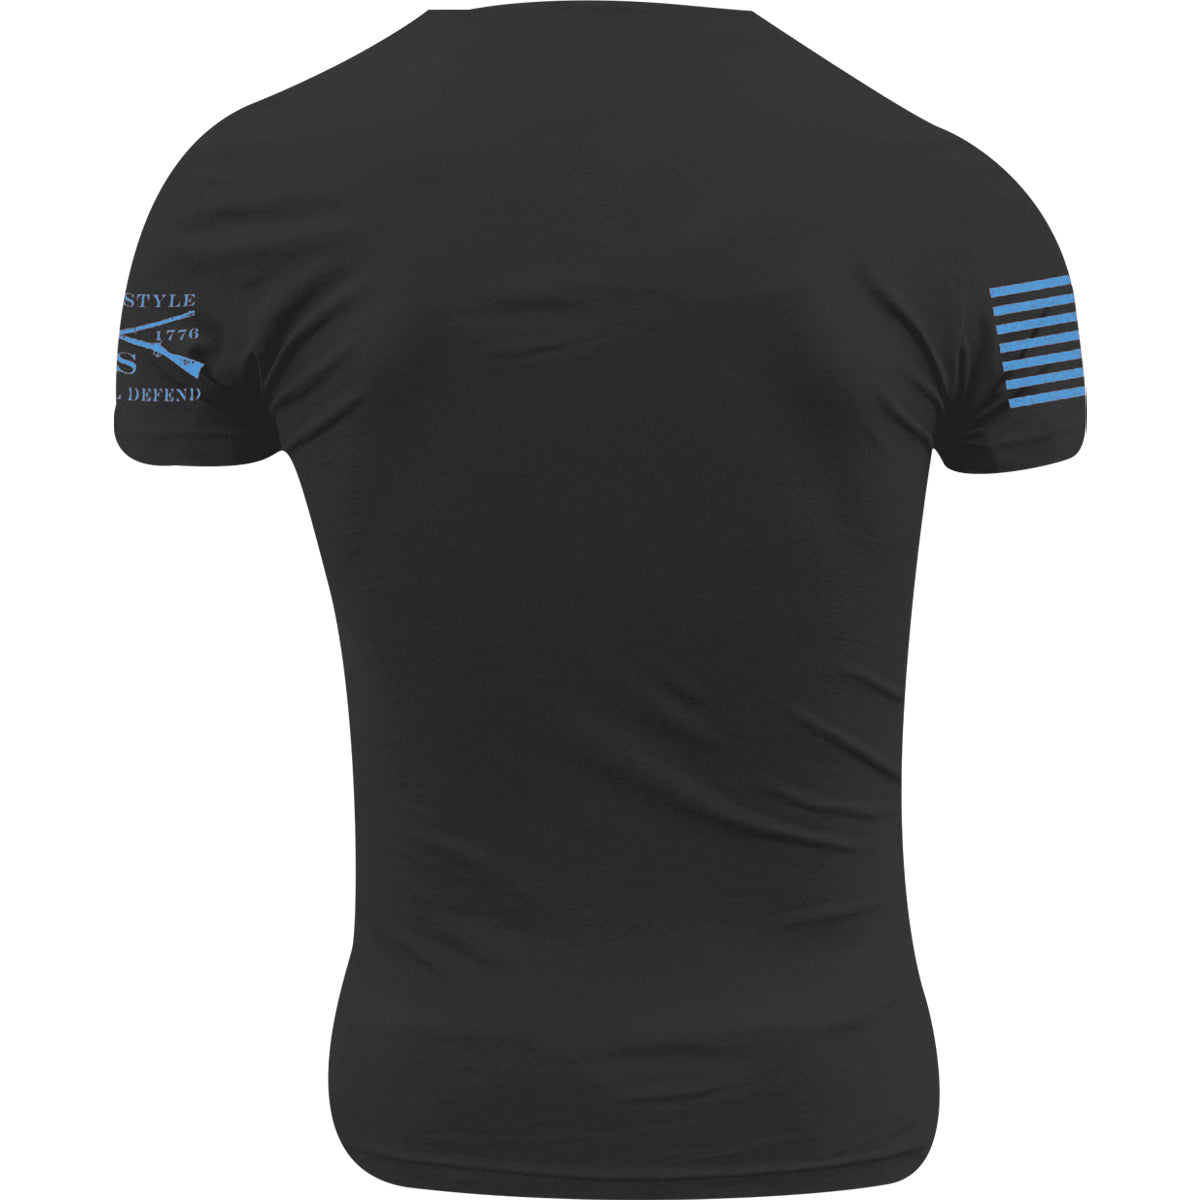 Grunt Style 1776 Short-Sleeve T-Shirt for Men